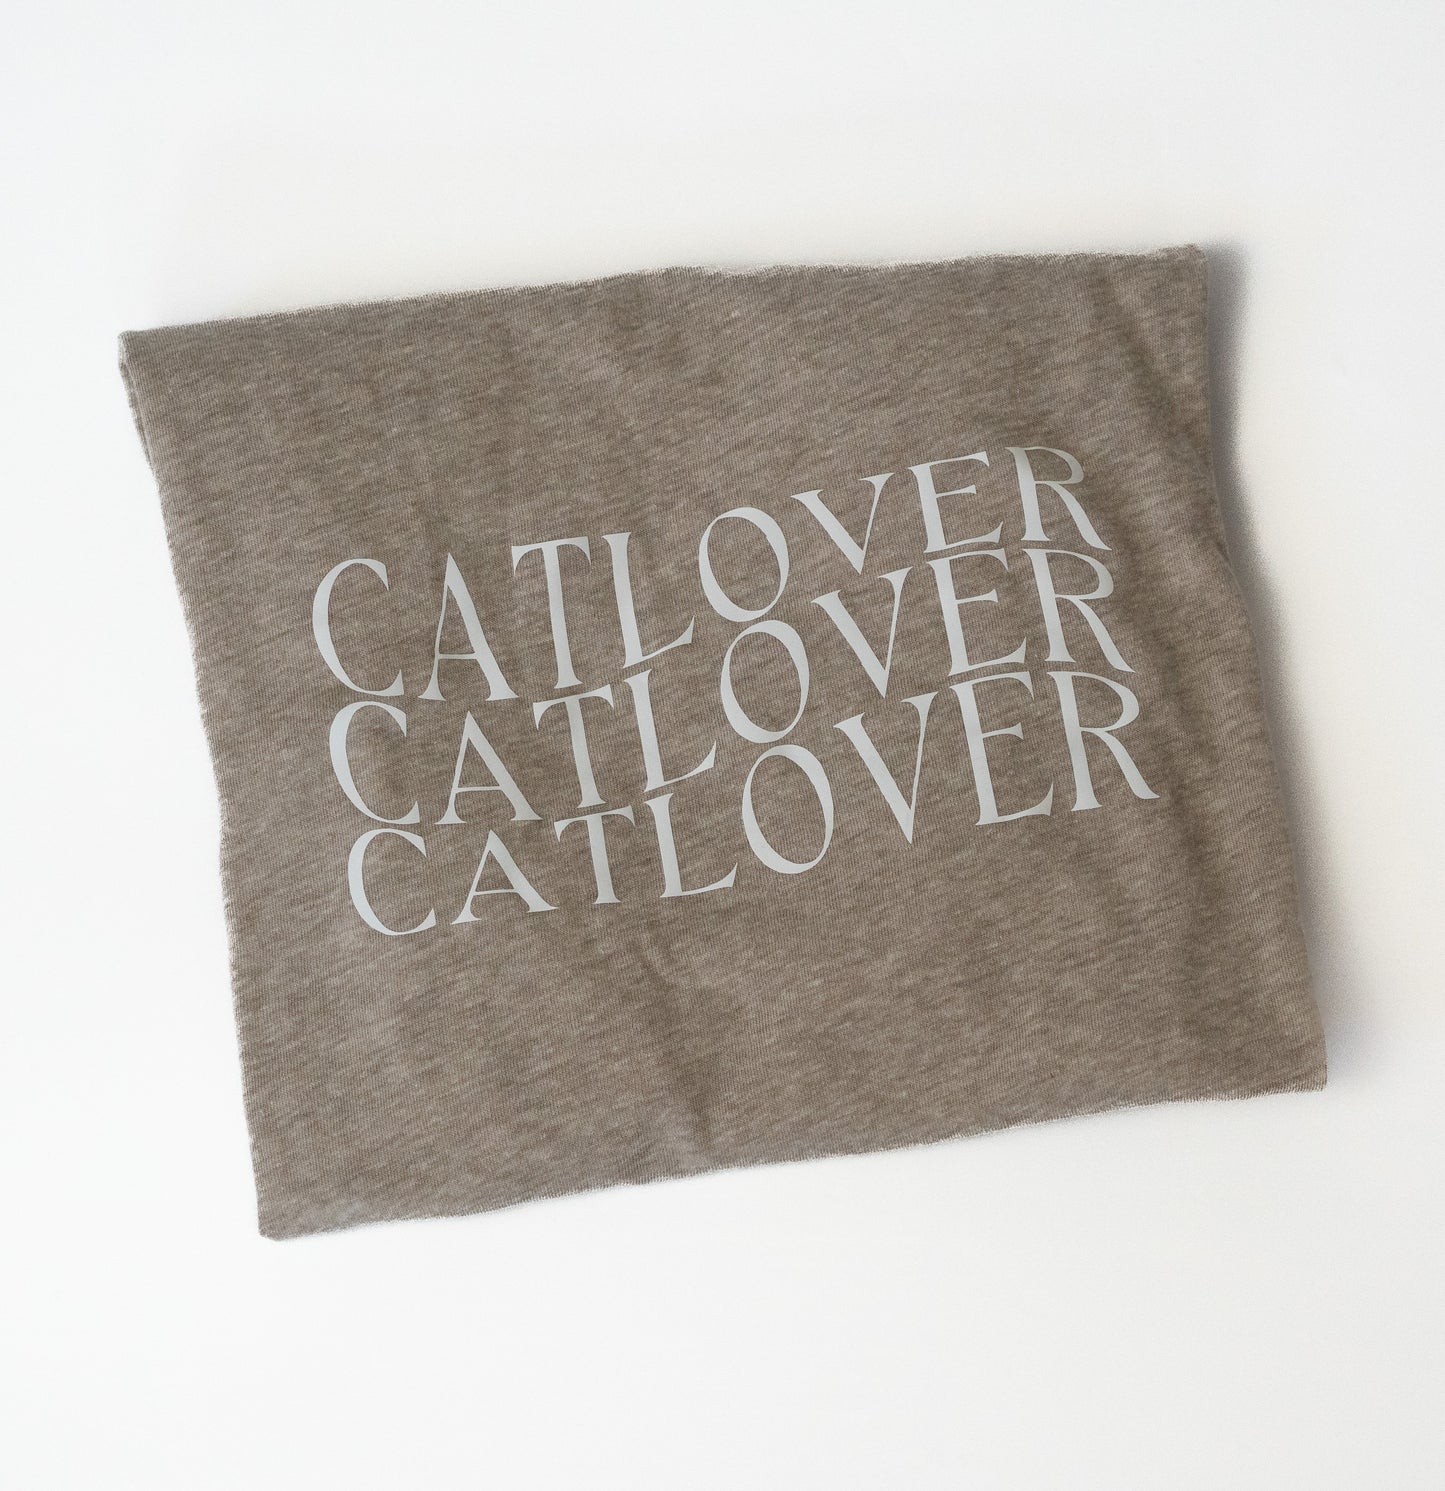 Top "Catlover"